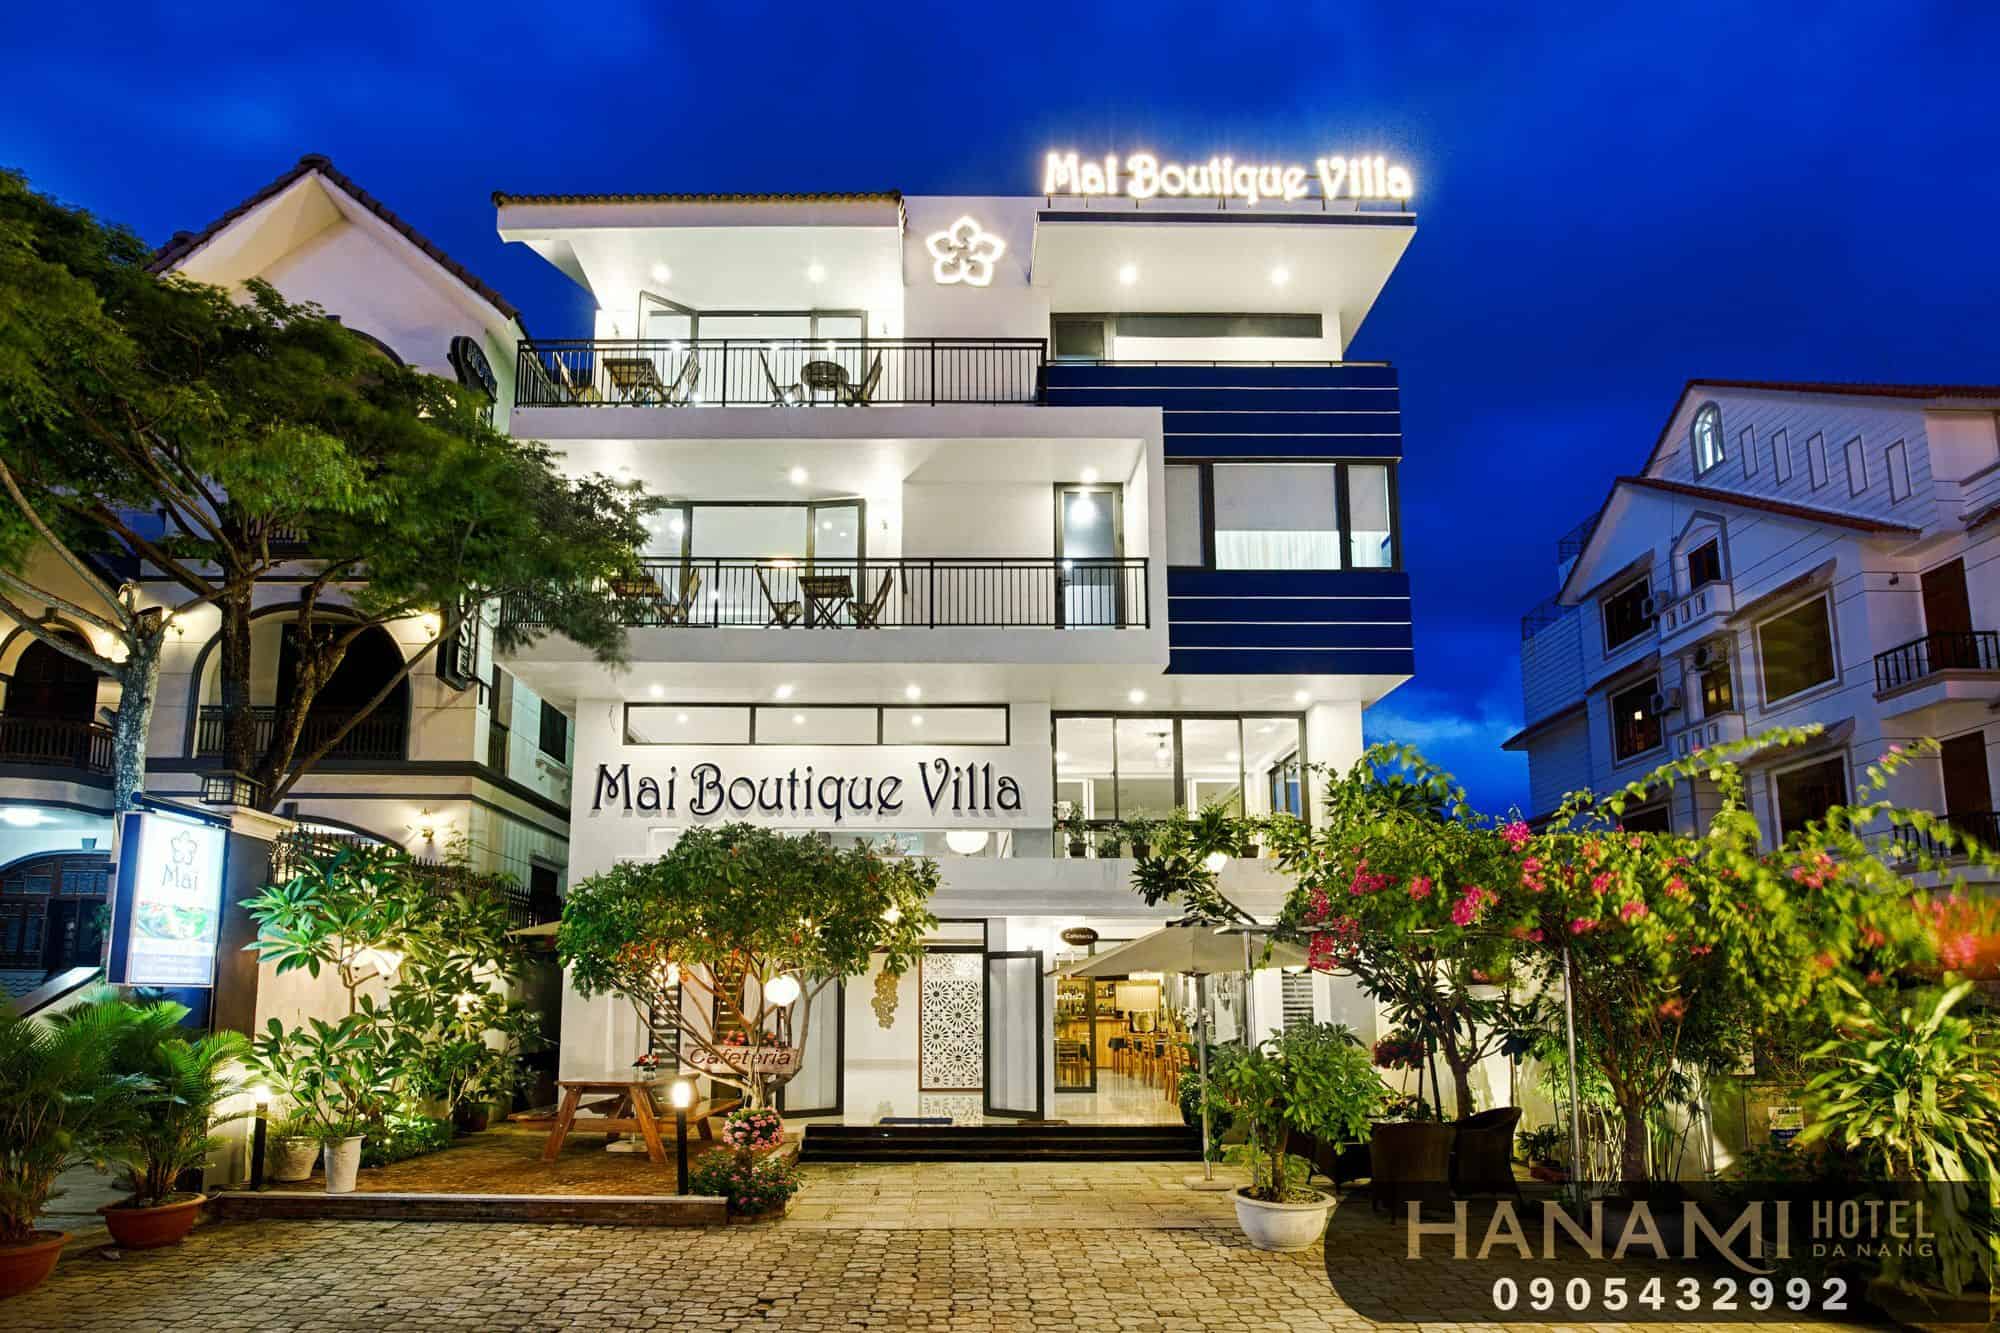 khách sạn đường Hồ Nghinh Đà Nẵng